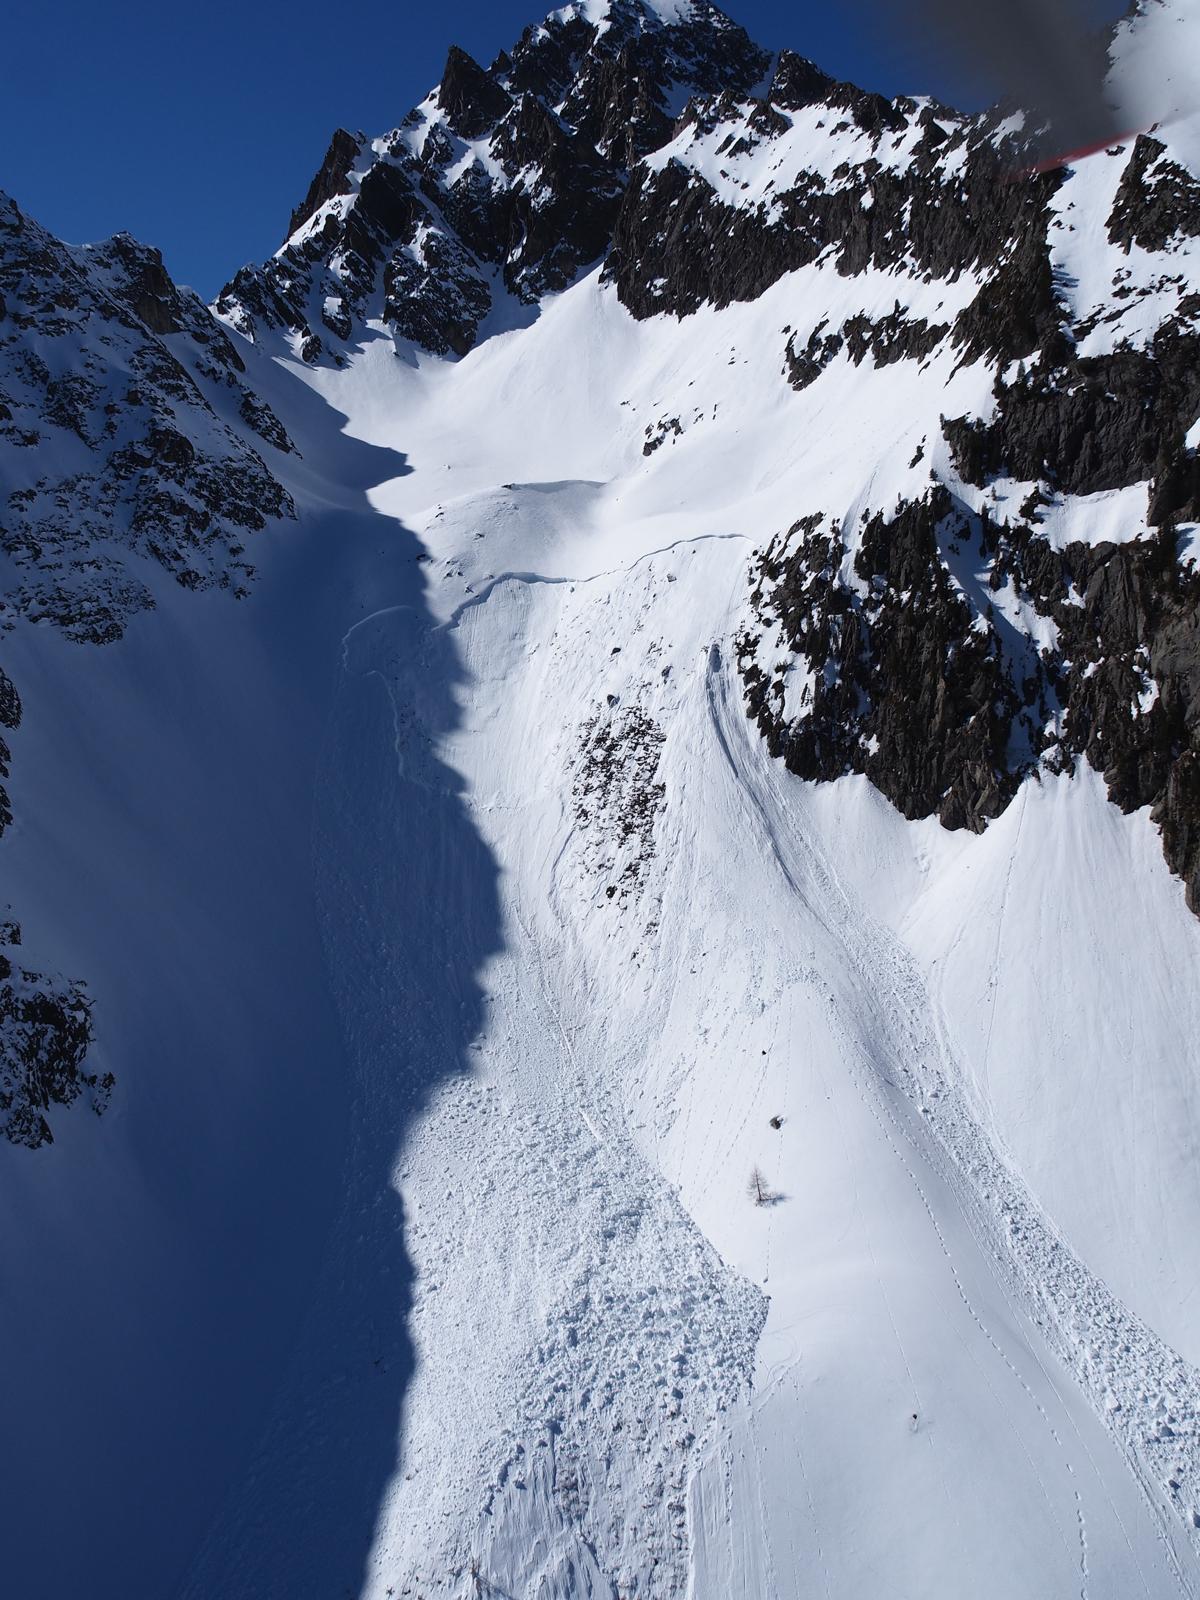 Depuis deux mois, 4 personnes ont perdu la vie dans une avalanche en Valais - la zone de décrochement de l'avalanche de dimanche sur cette photo - mais on ne peut pas parler de série noire pour autant.